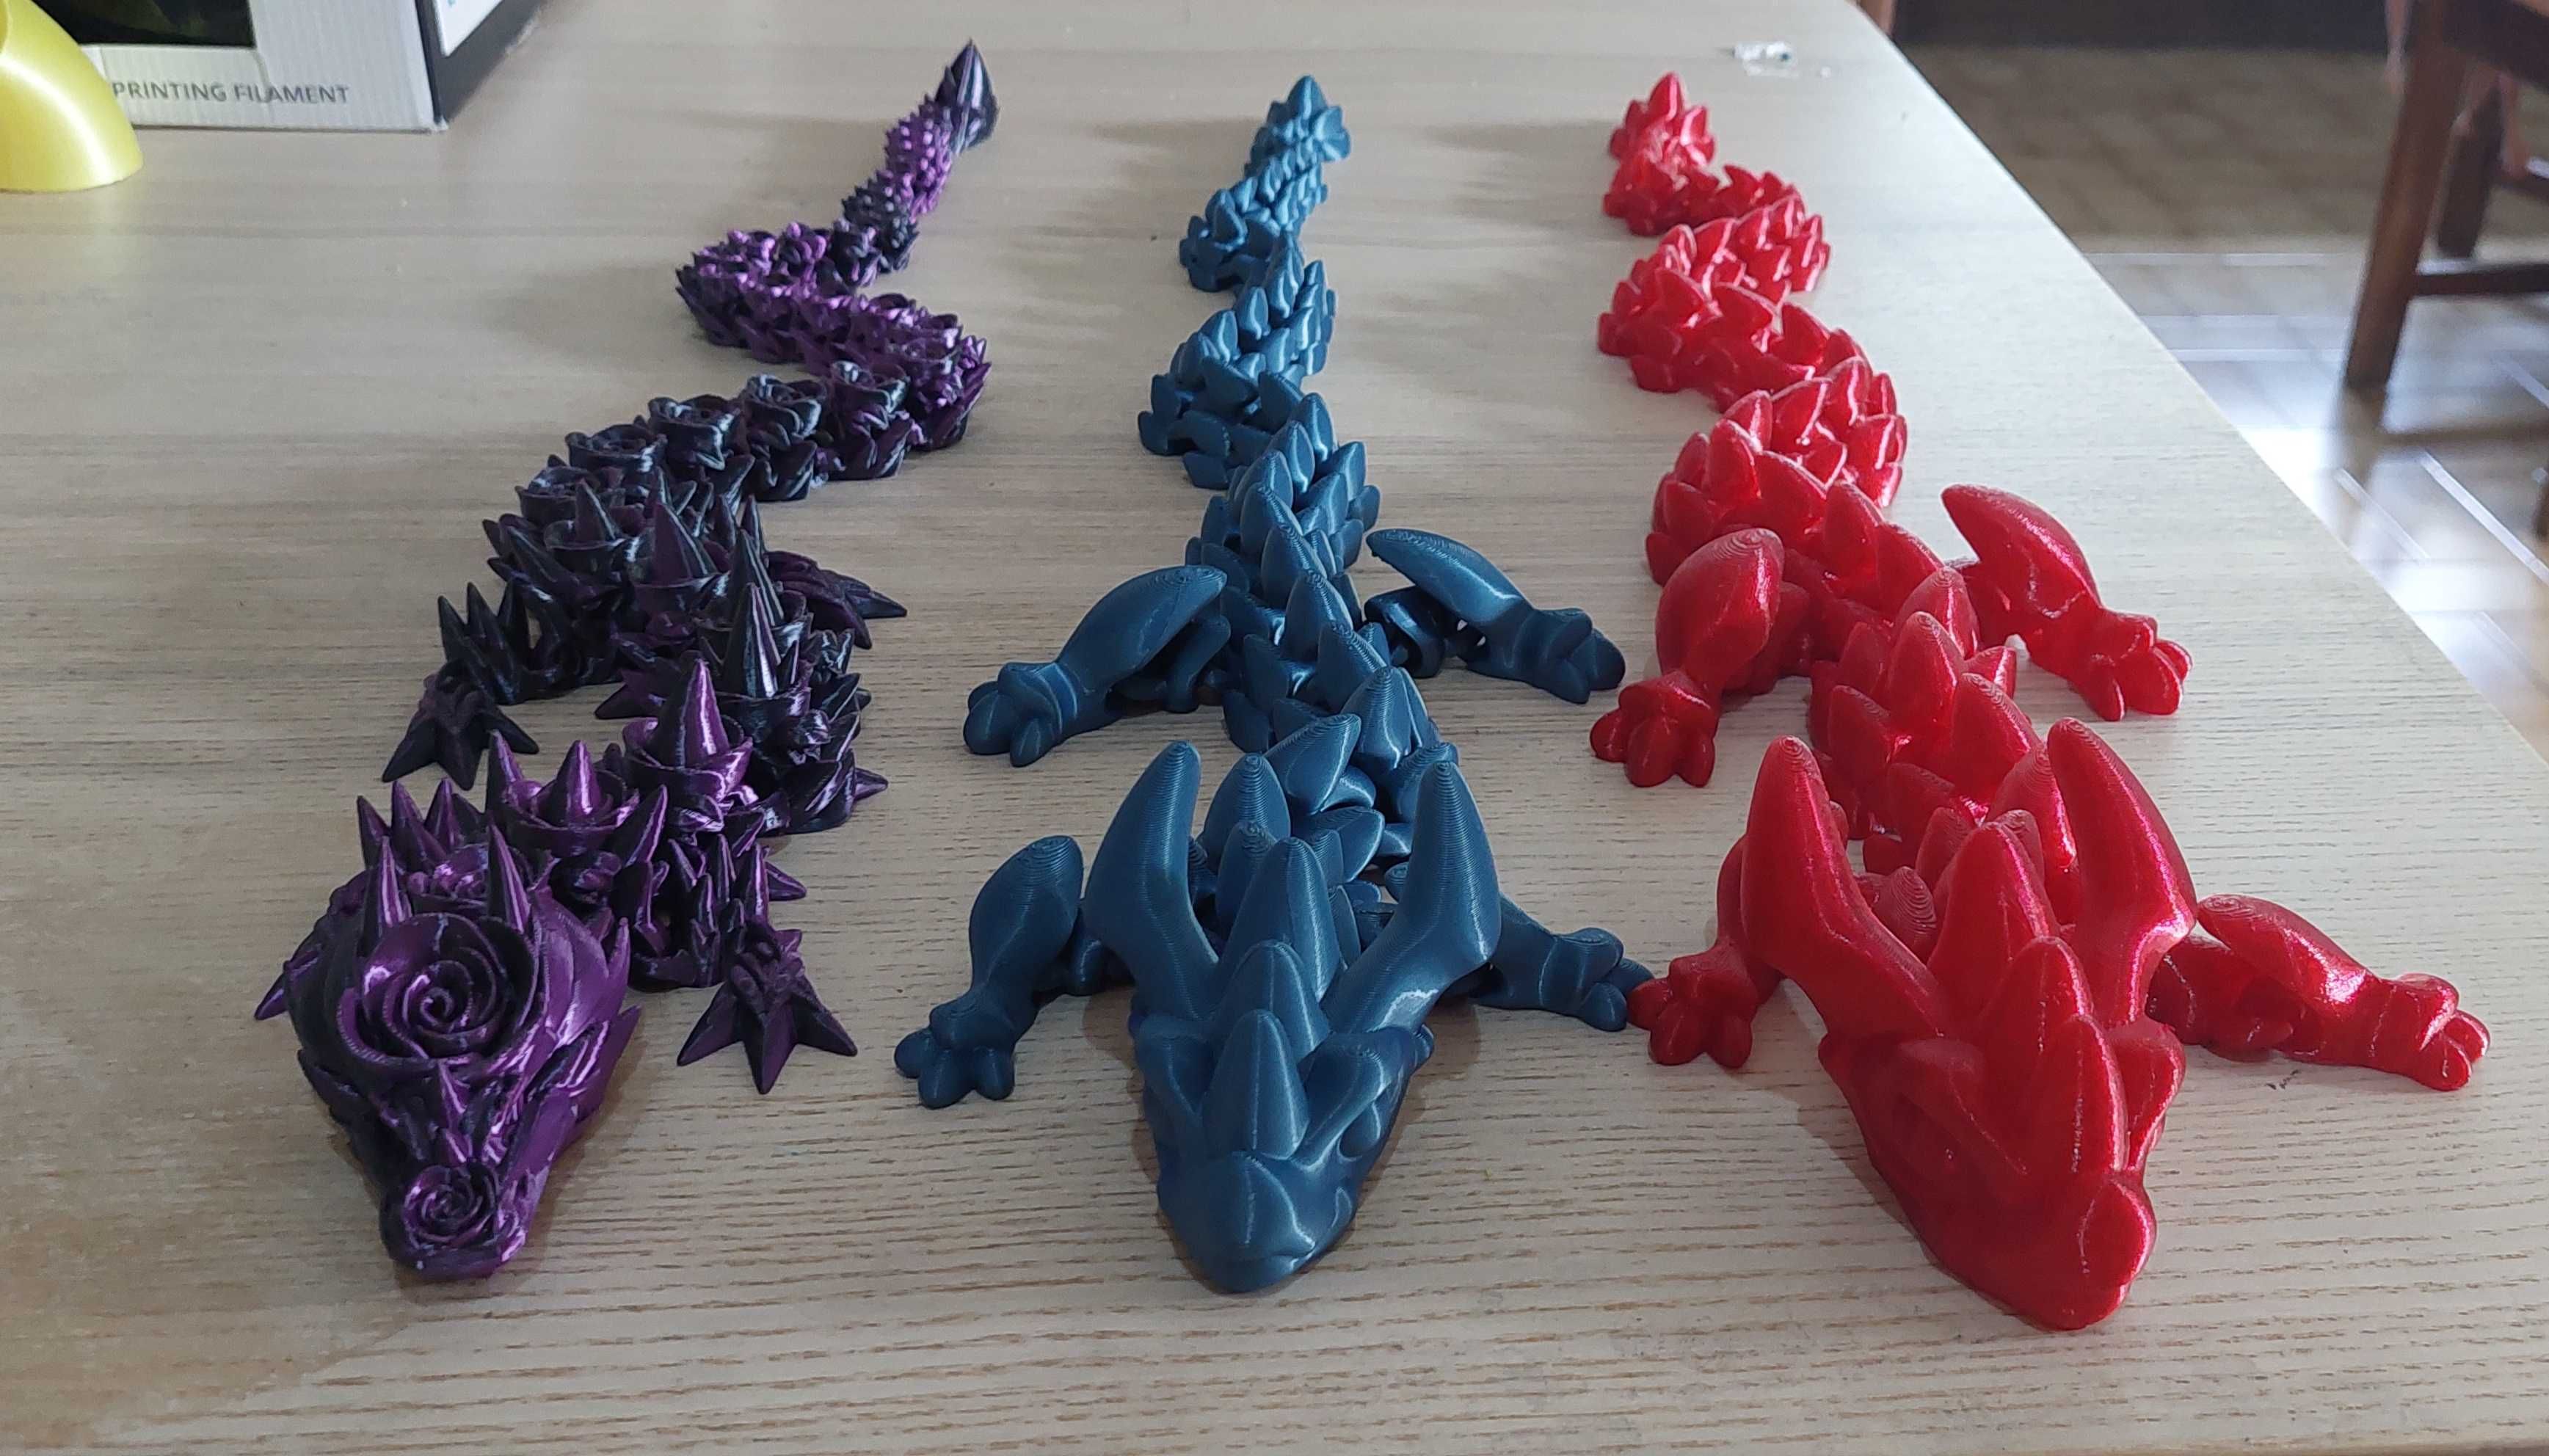 Dragoes articulados em 3D